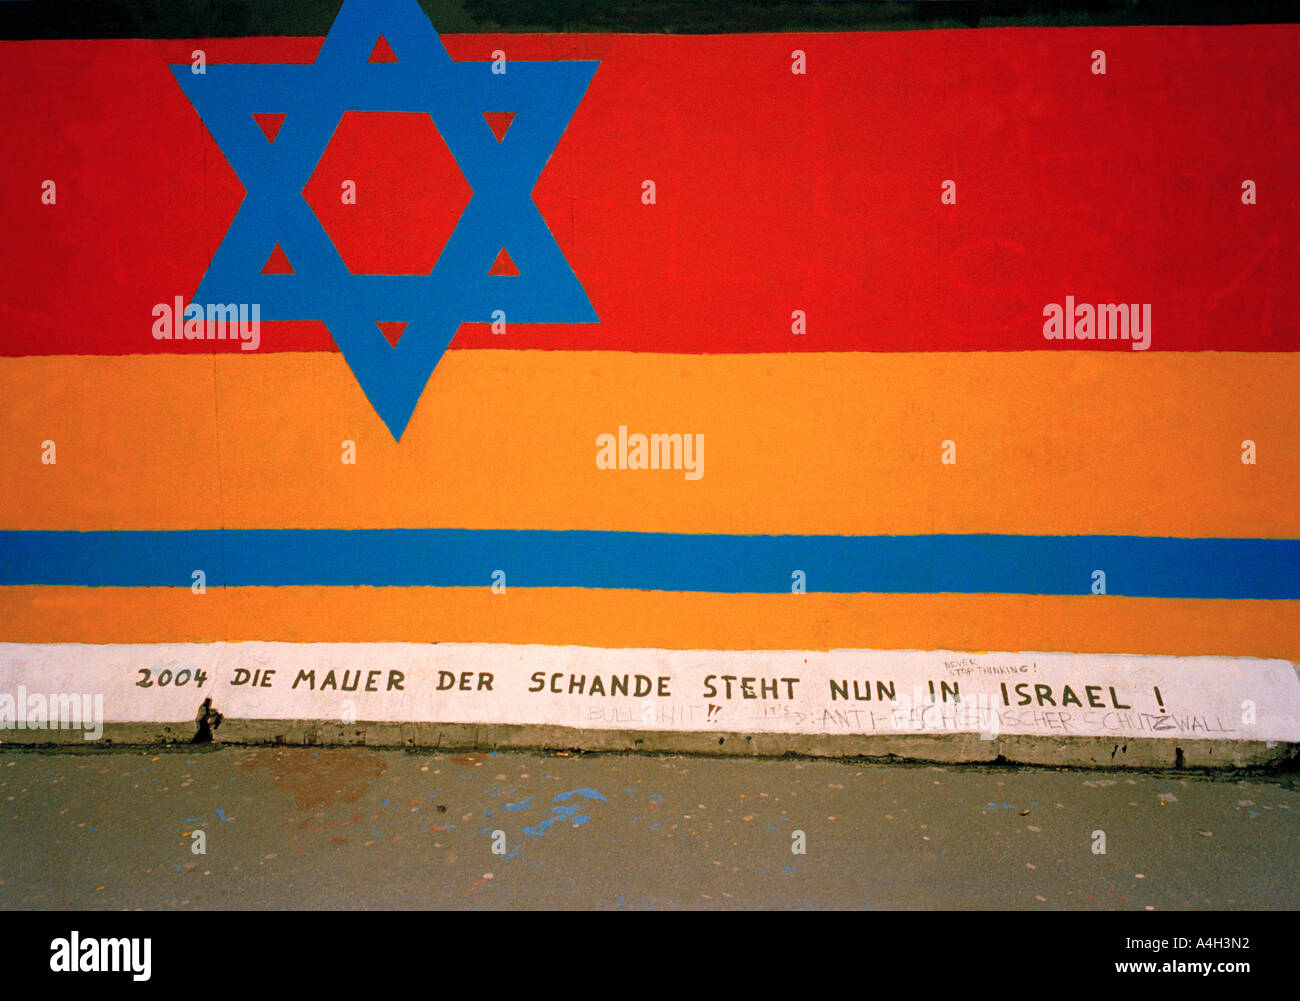 Un graffiti sur le mur de Berlin avec l'étoile de David, exprimer son opposition à l'antisémitisme dans le Moyen-Orient. Banque D'Images